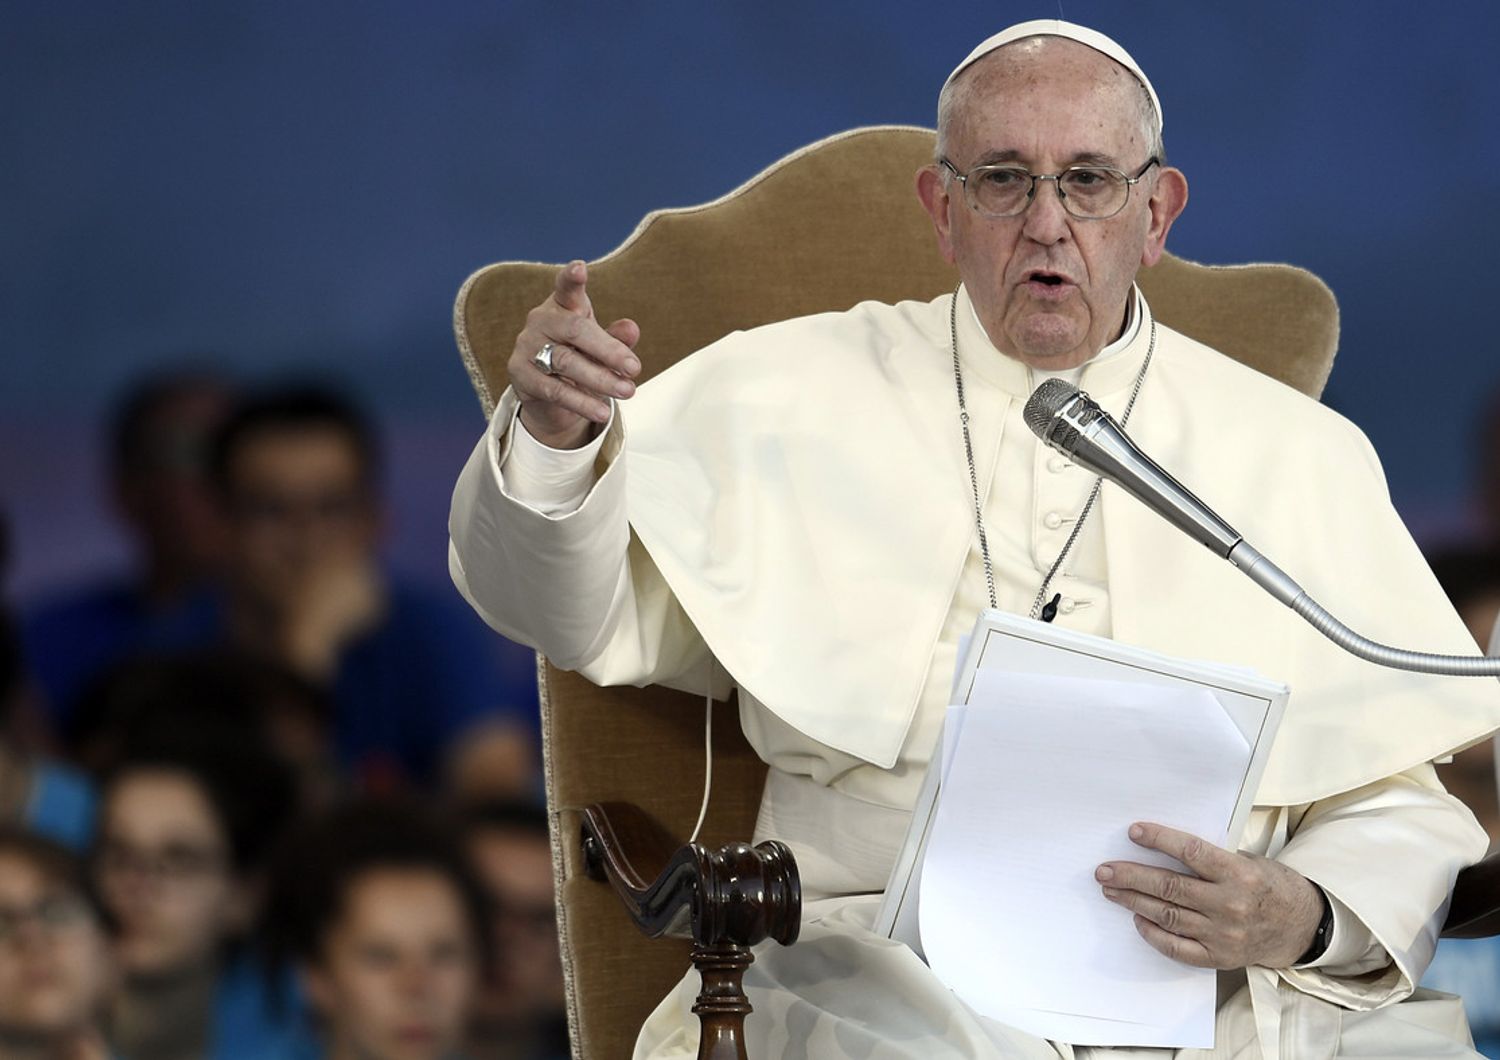 &nbsp;Papa Francesco e giovani, Circo Massimo-Roma (AFP)